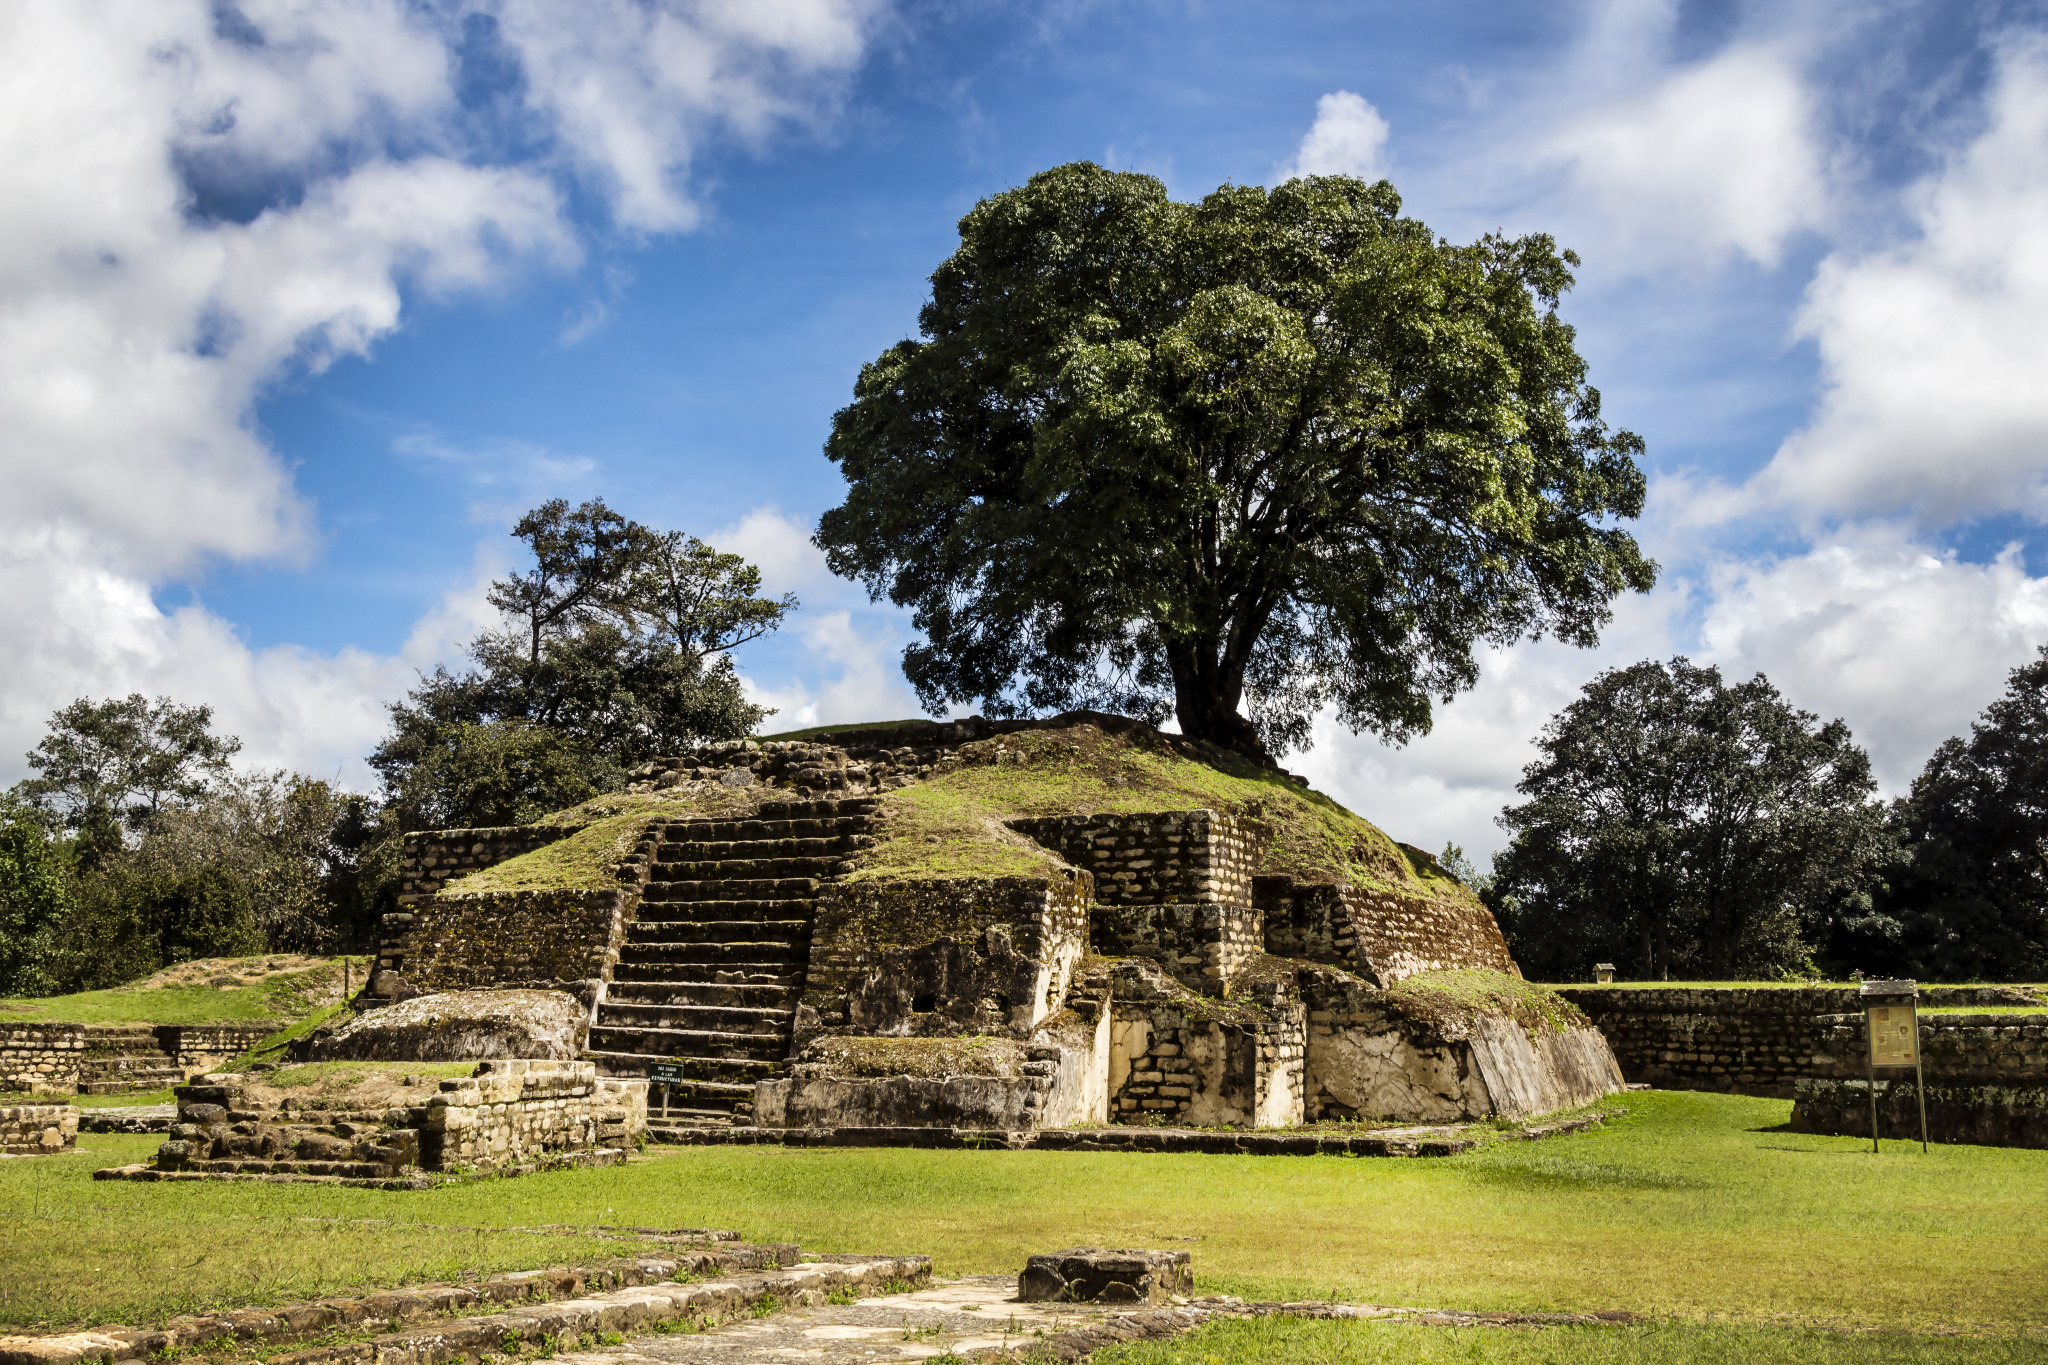 Iximche Mayan ruins in Guatemala
